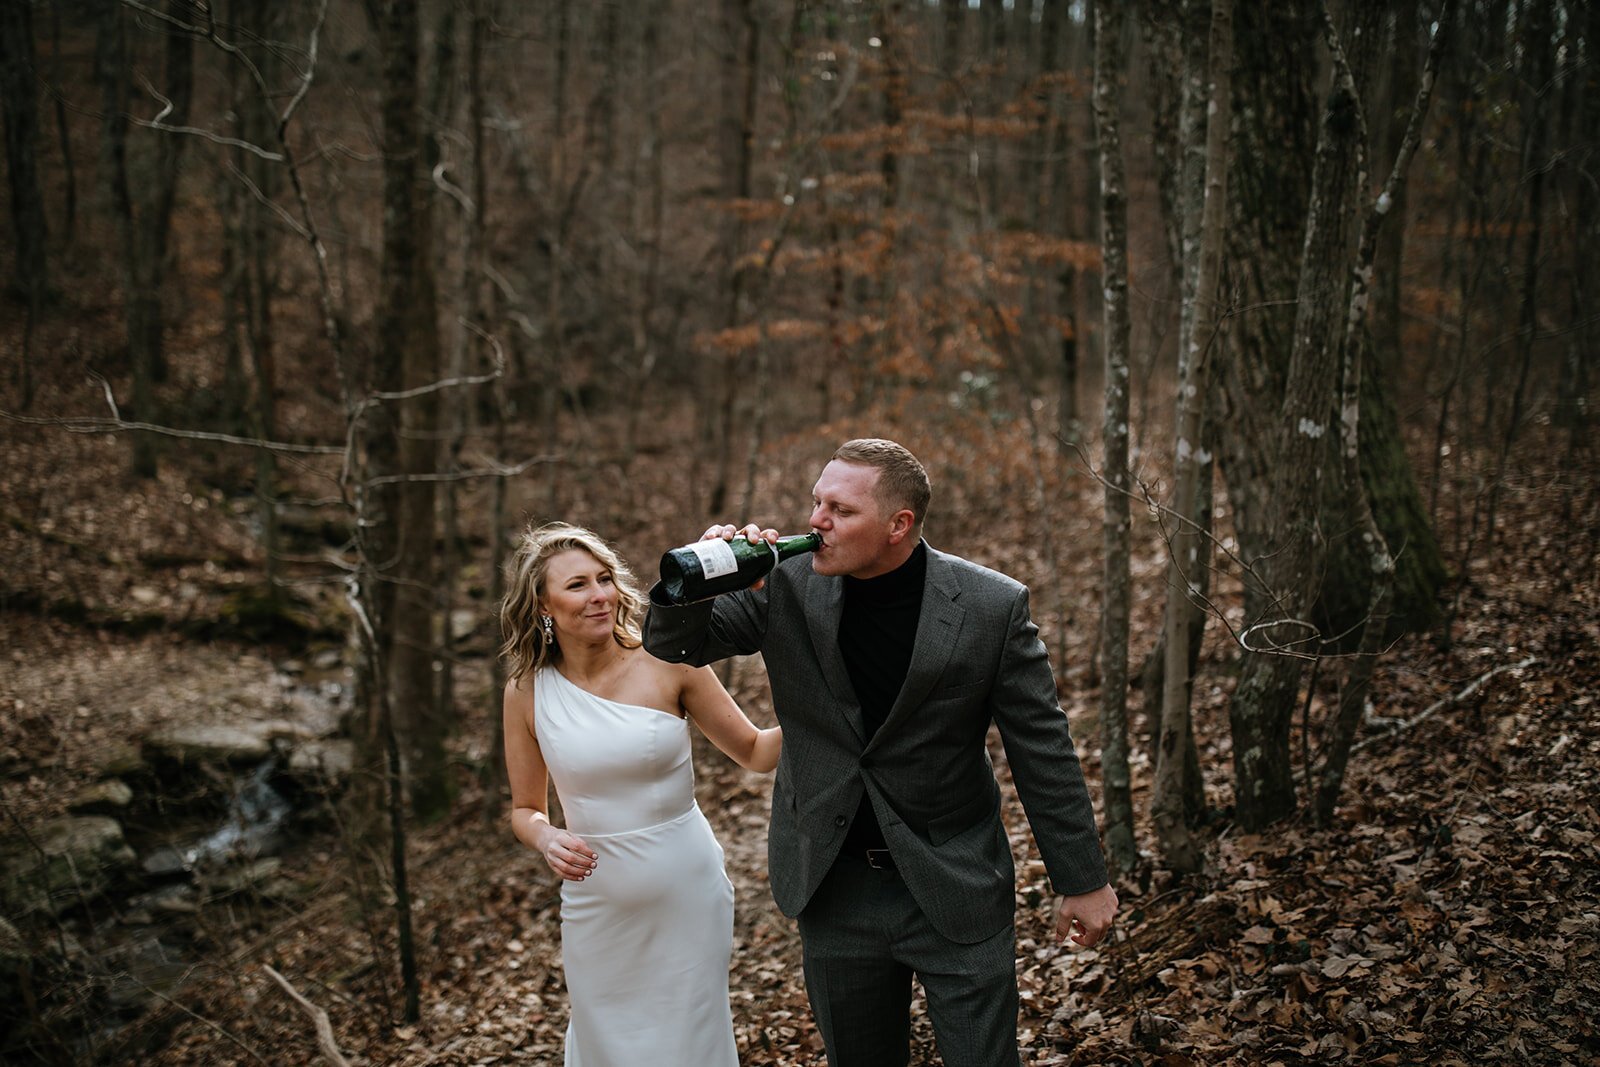 snoopers-rock-adventure-elopement-chattanooga-wedding-photographerfoster-falls-elopement-chattanooga-wedding-photographer-521_websize.jpg